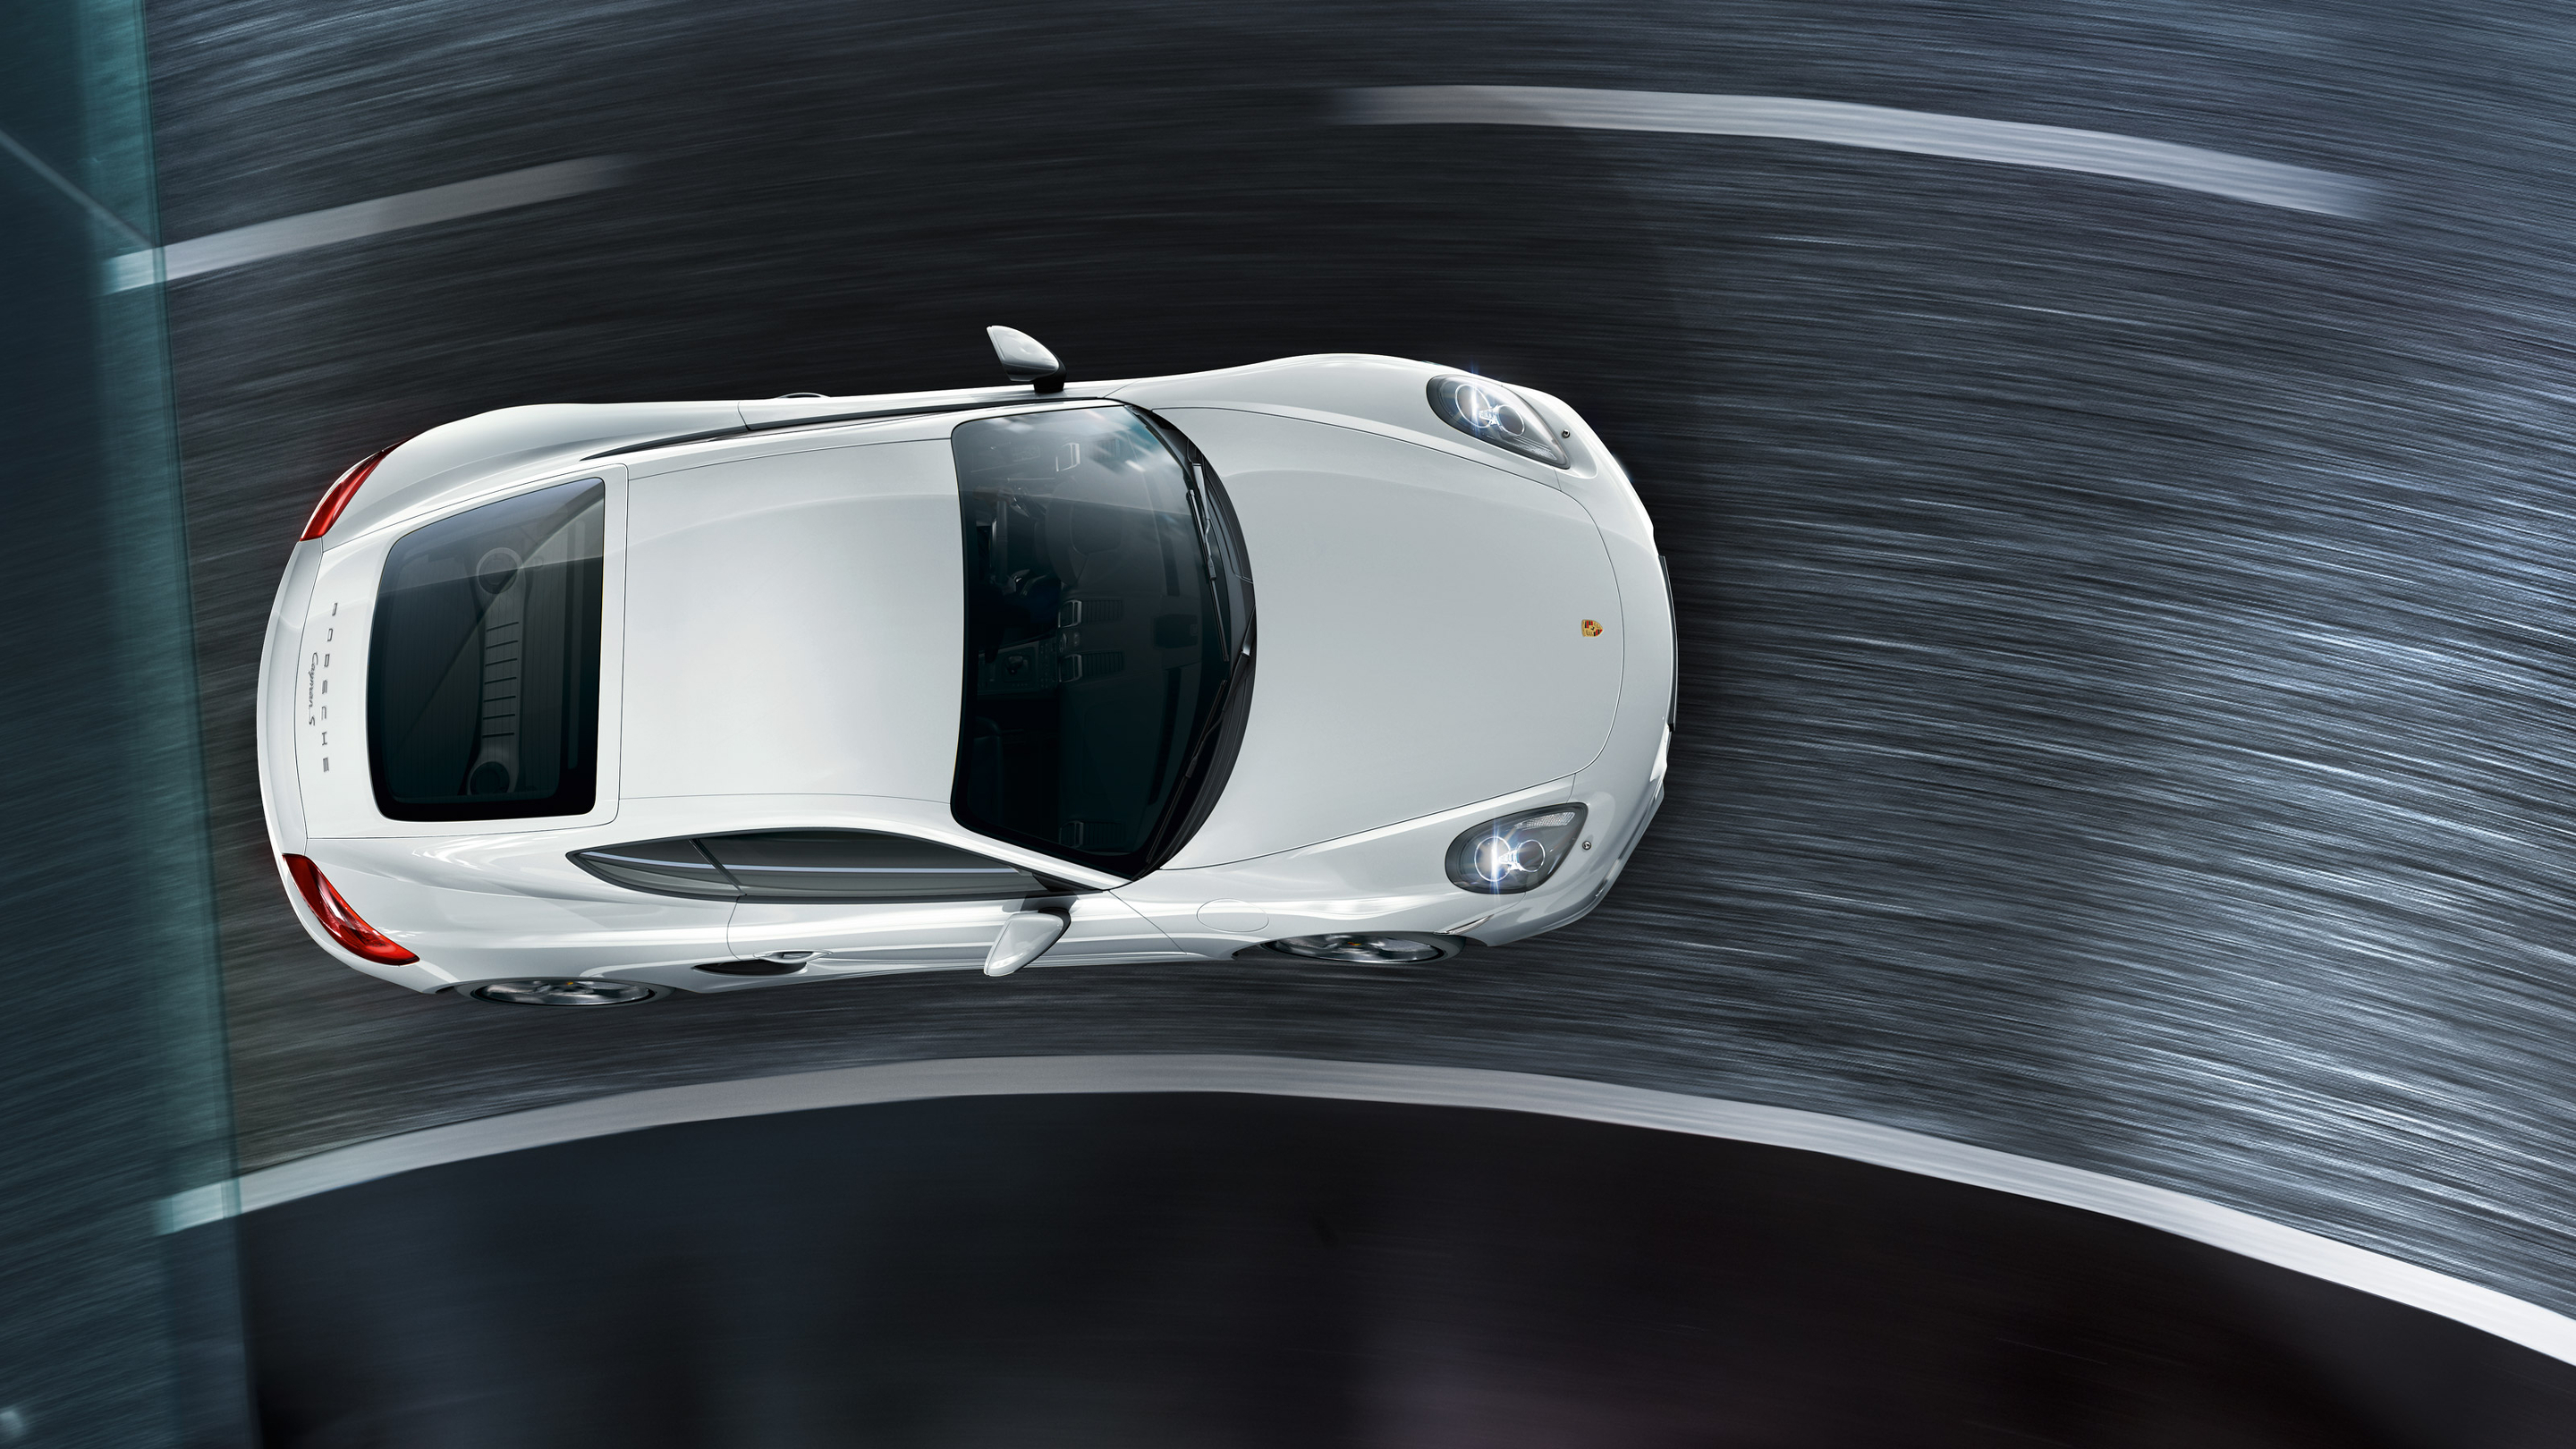 Descarga gratuita de fondo de pantalla para móvil de Porsche Caimán S, Porsche Caimán, Coche Blanco, Porsche, Vehículos, Coche.